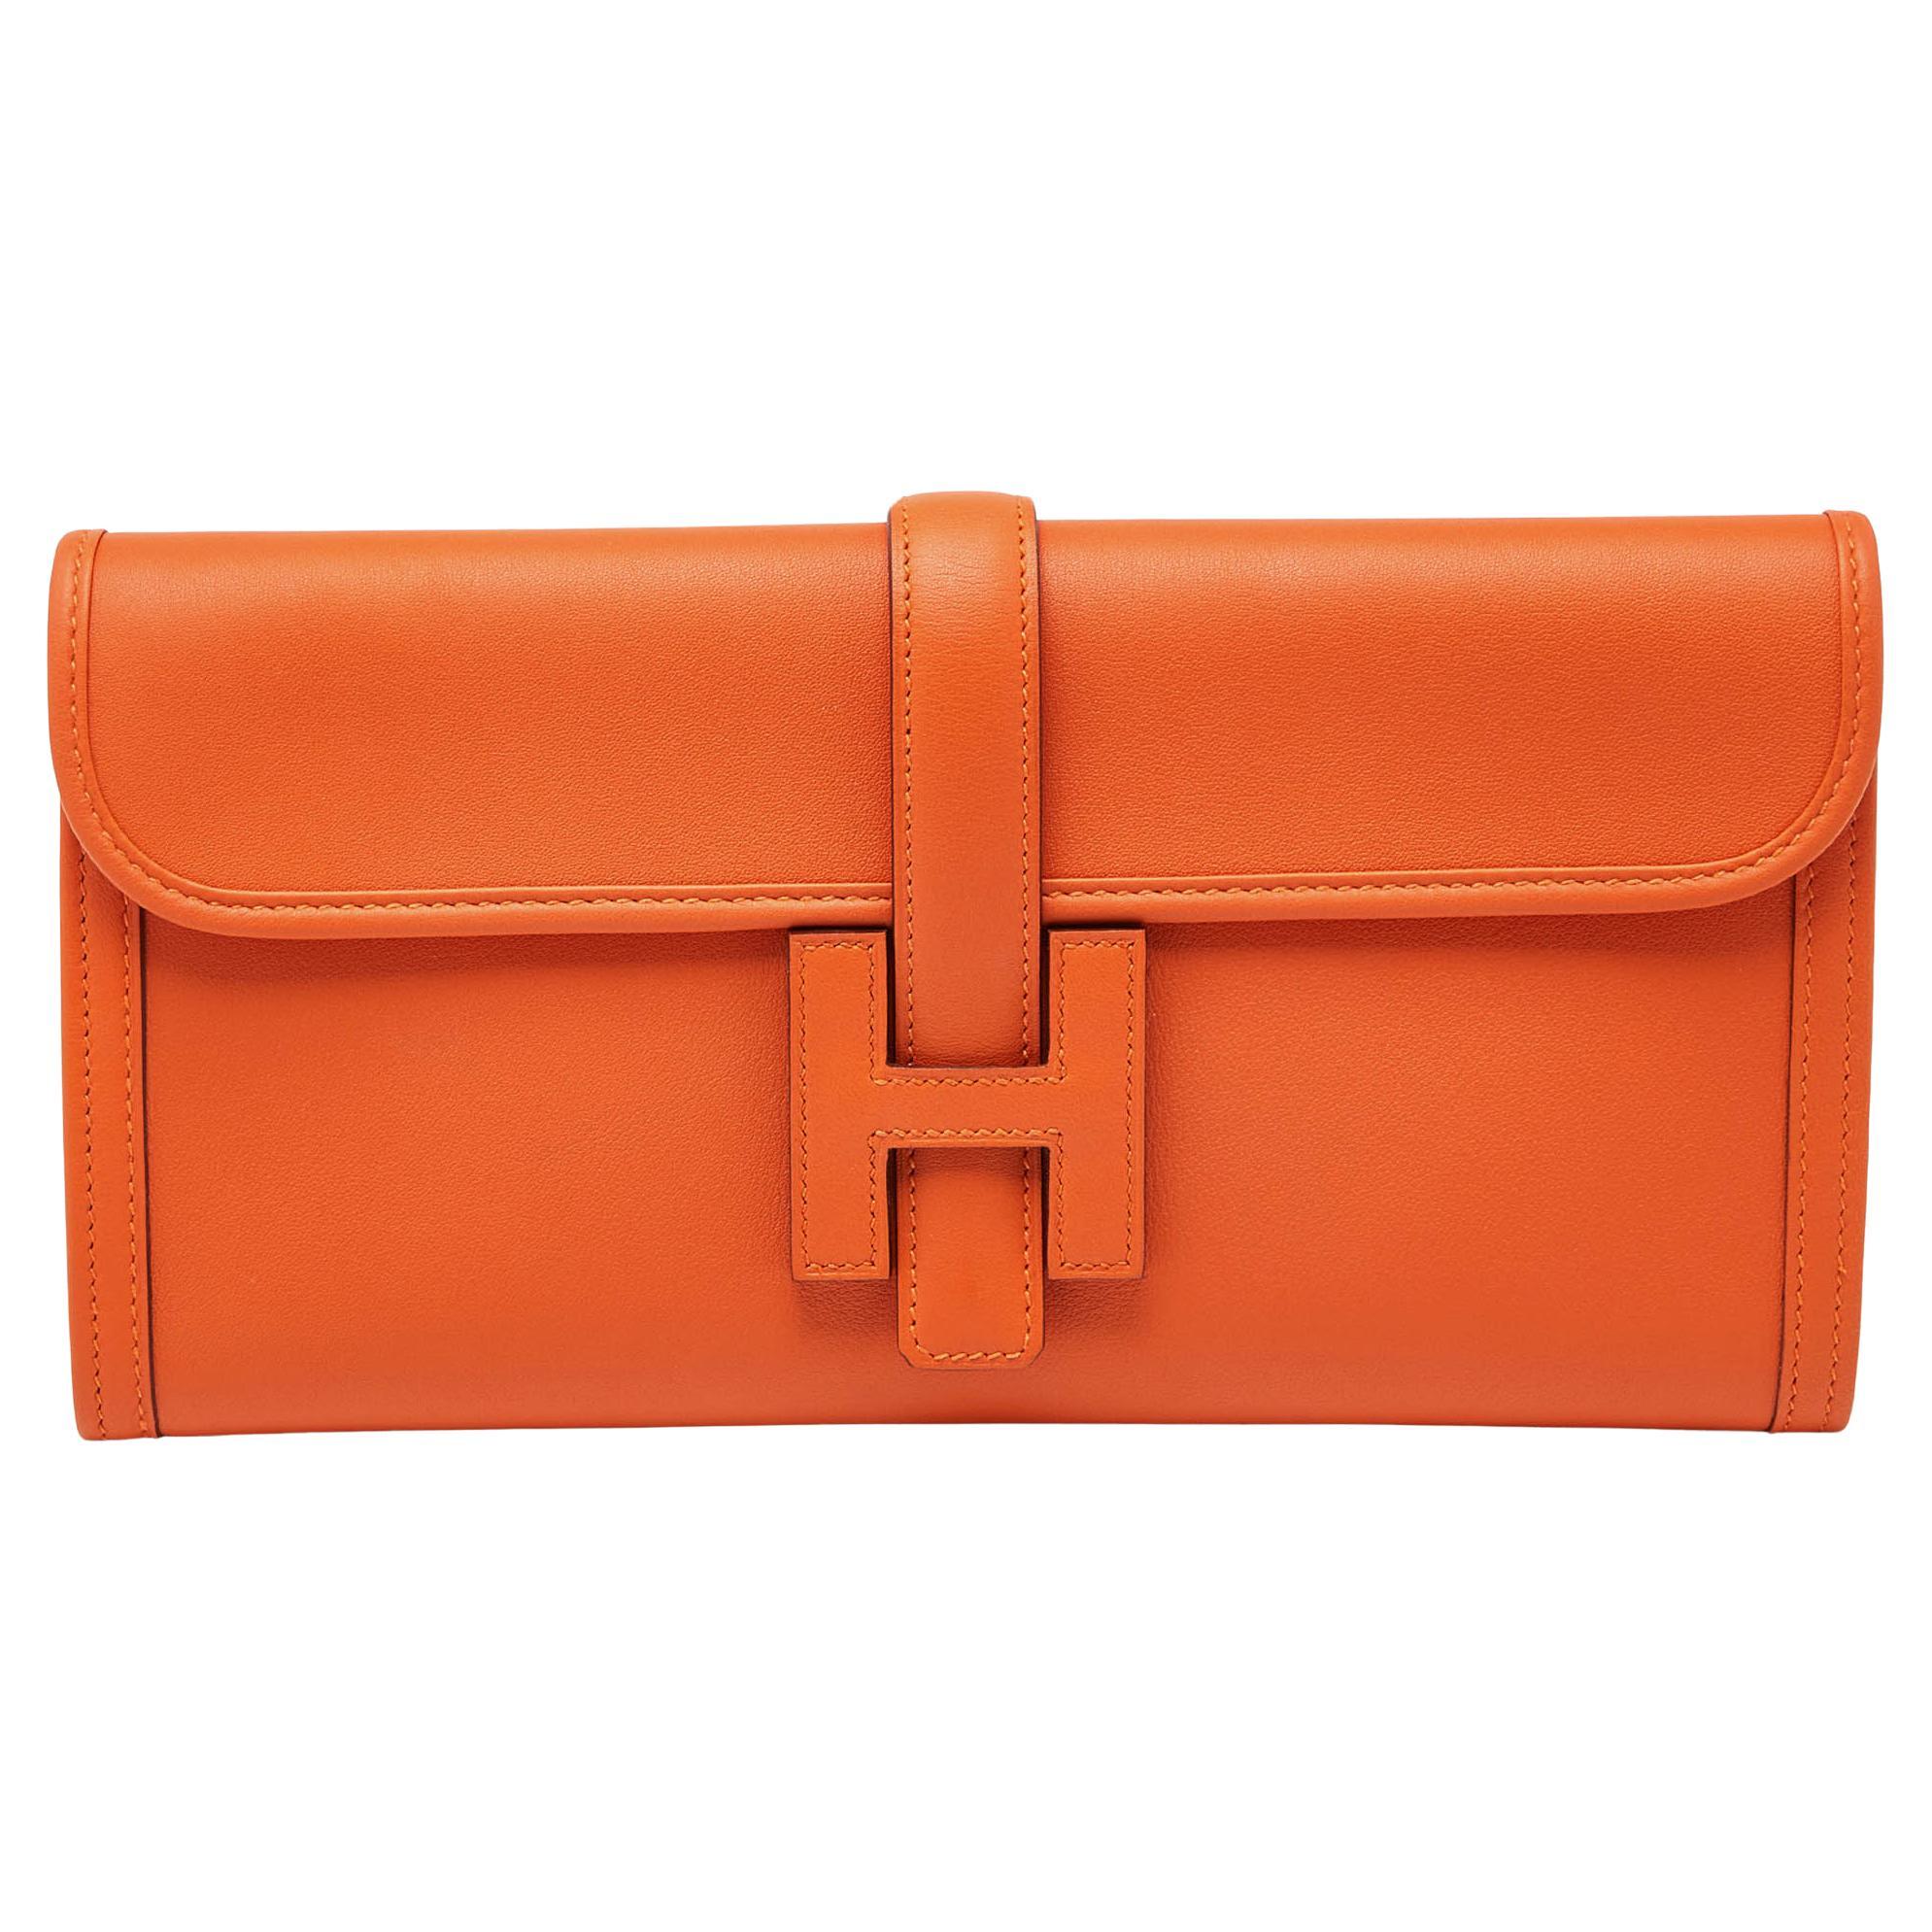 Hermès - Pochette Jige Elan 29 en cuir Swift orange